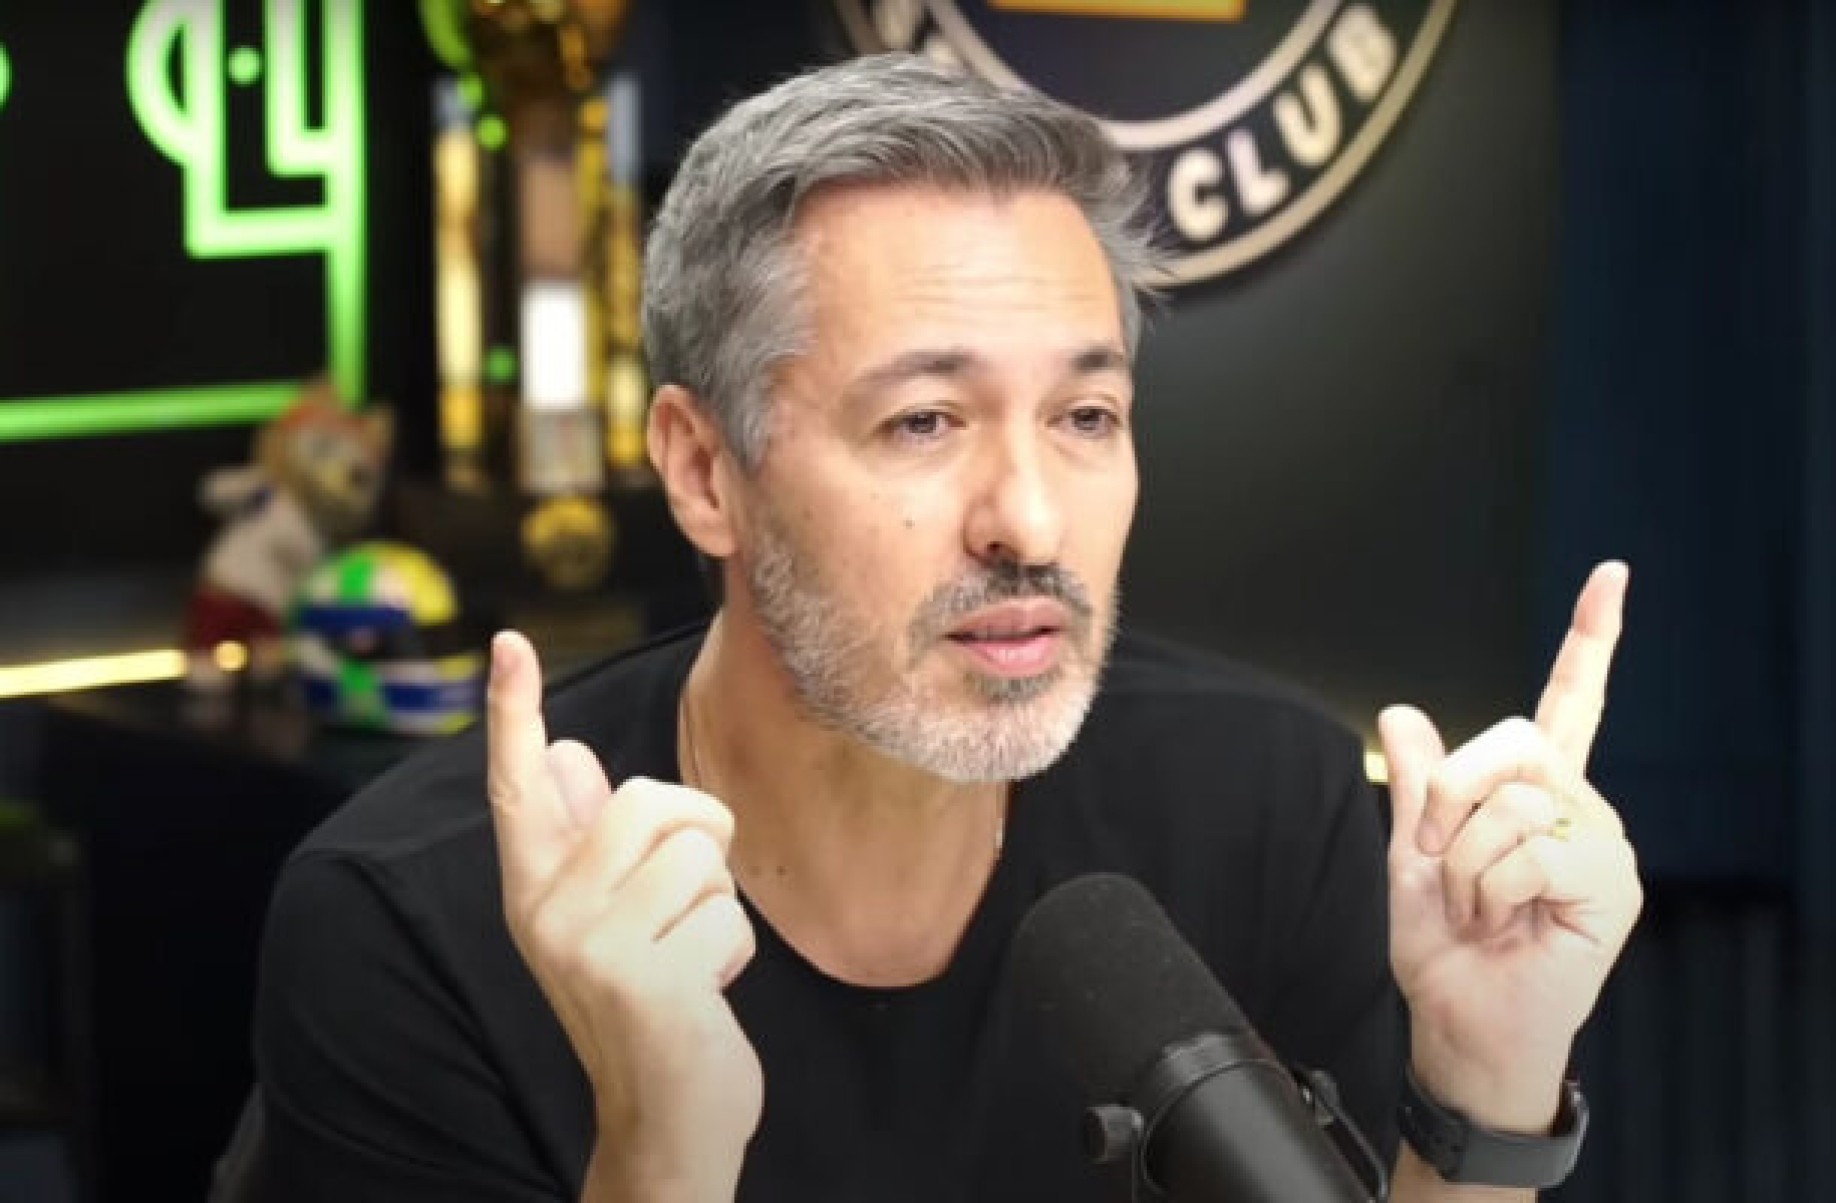 Narrador esclarece polêmica comparação envolvendo torcida do Palmeiras